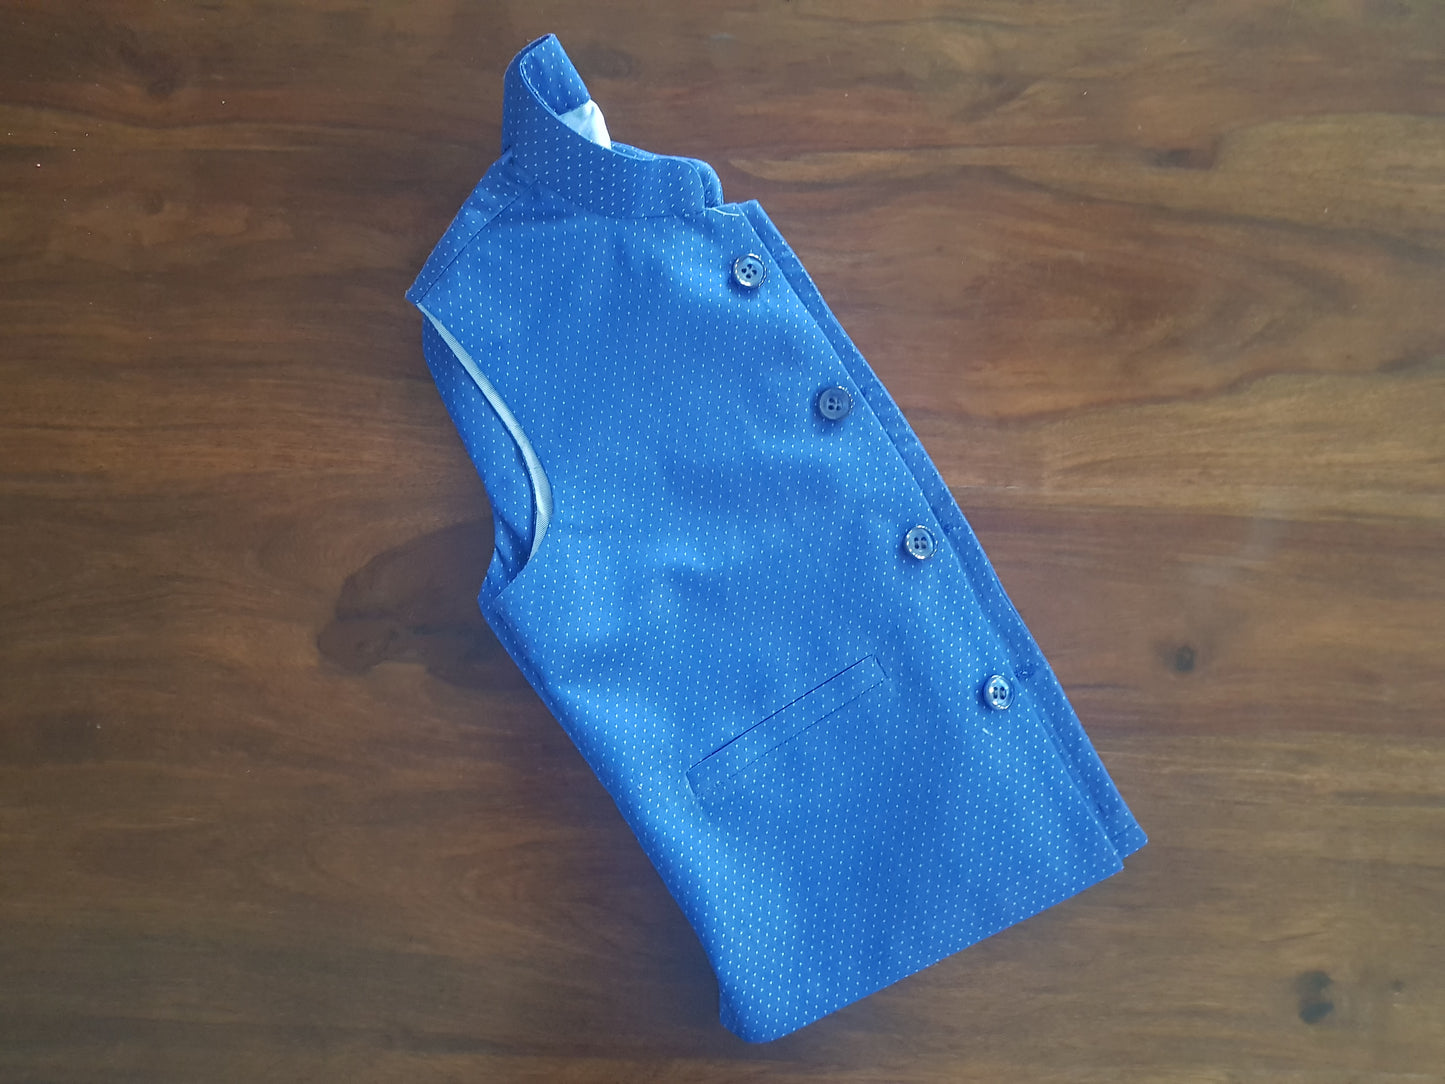 Blue Galaxy Cotton Wasket (Waist Coat)